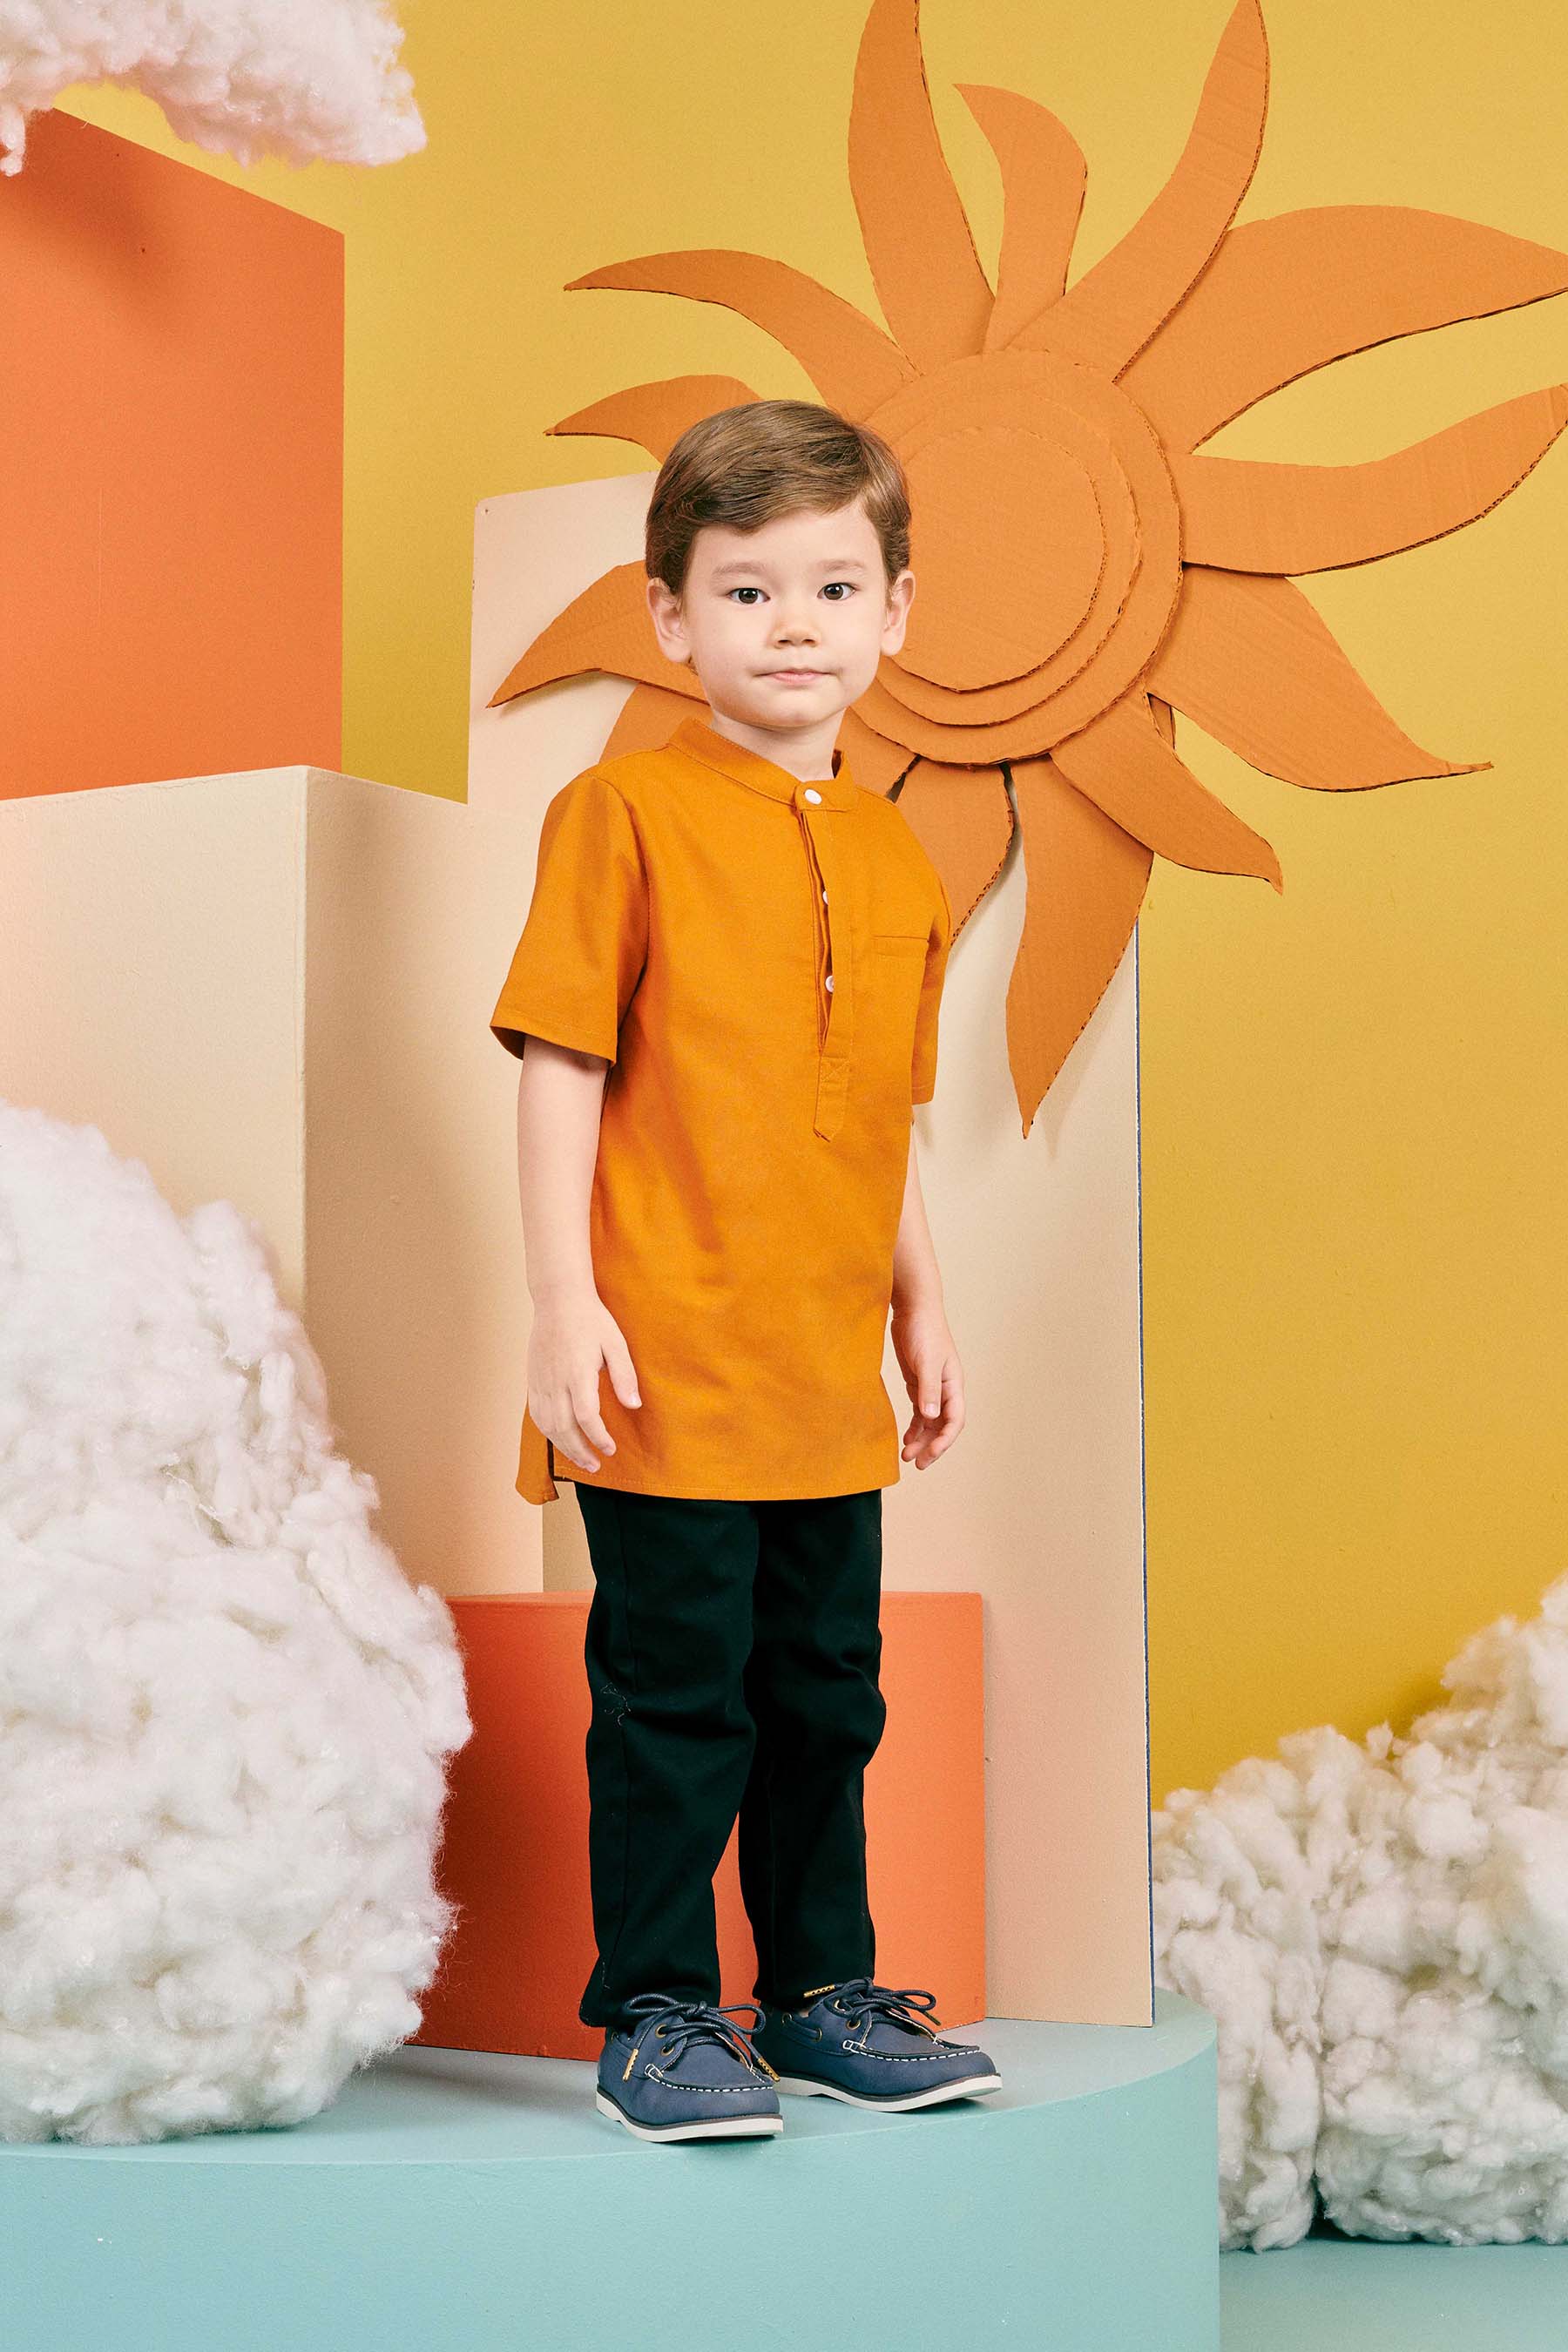 The Matahari Short Sleeves Shirt Orange